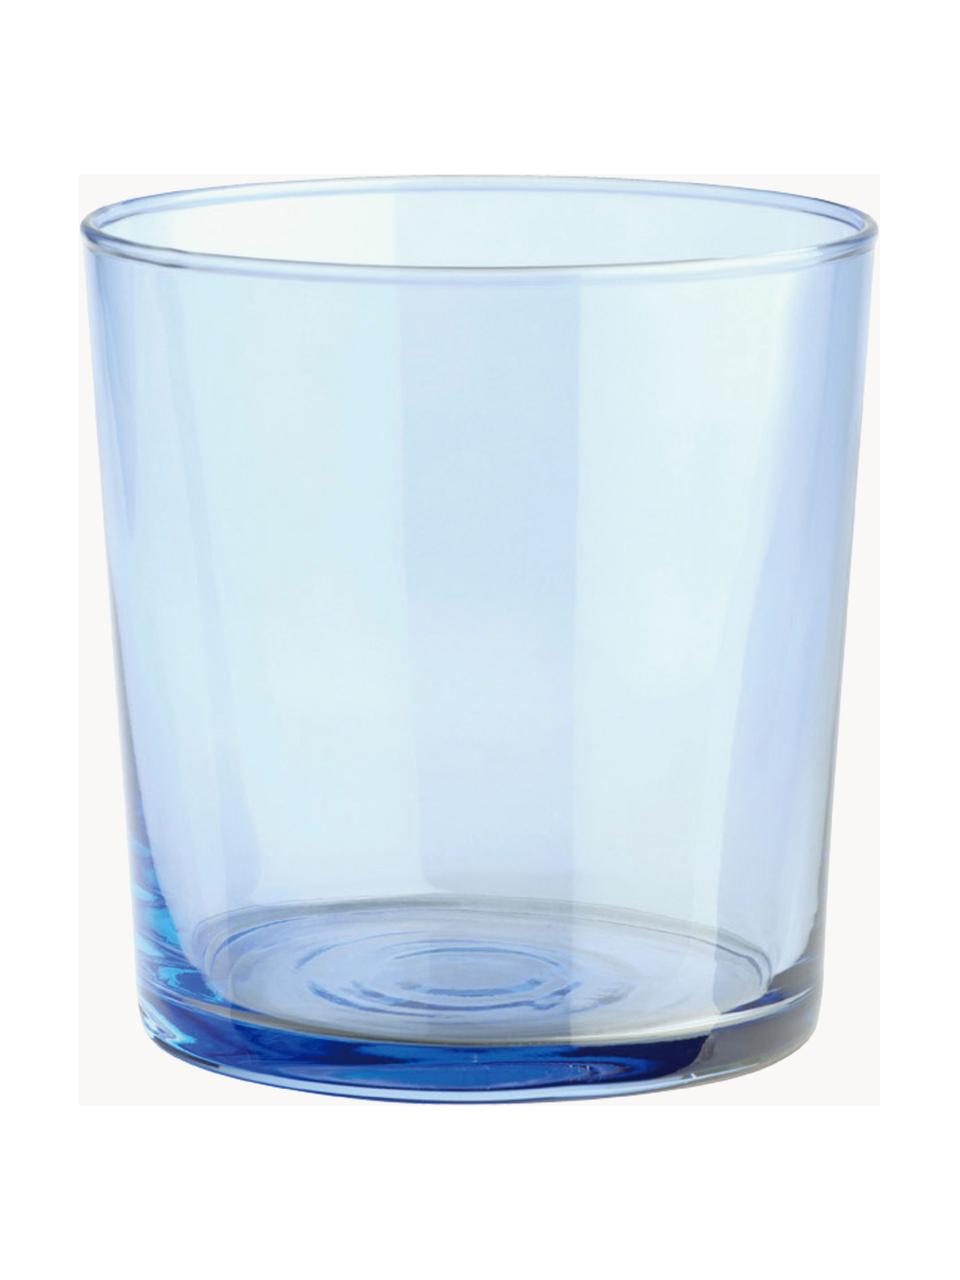 Set 6 bicchieri Lola, Vetro, Multicolore, trasparente, Ø 7 x Alt. 9 cm, 345 ml